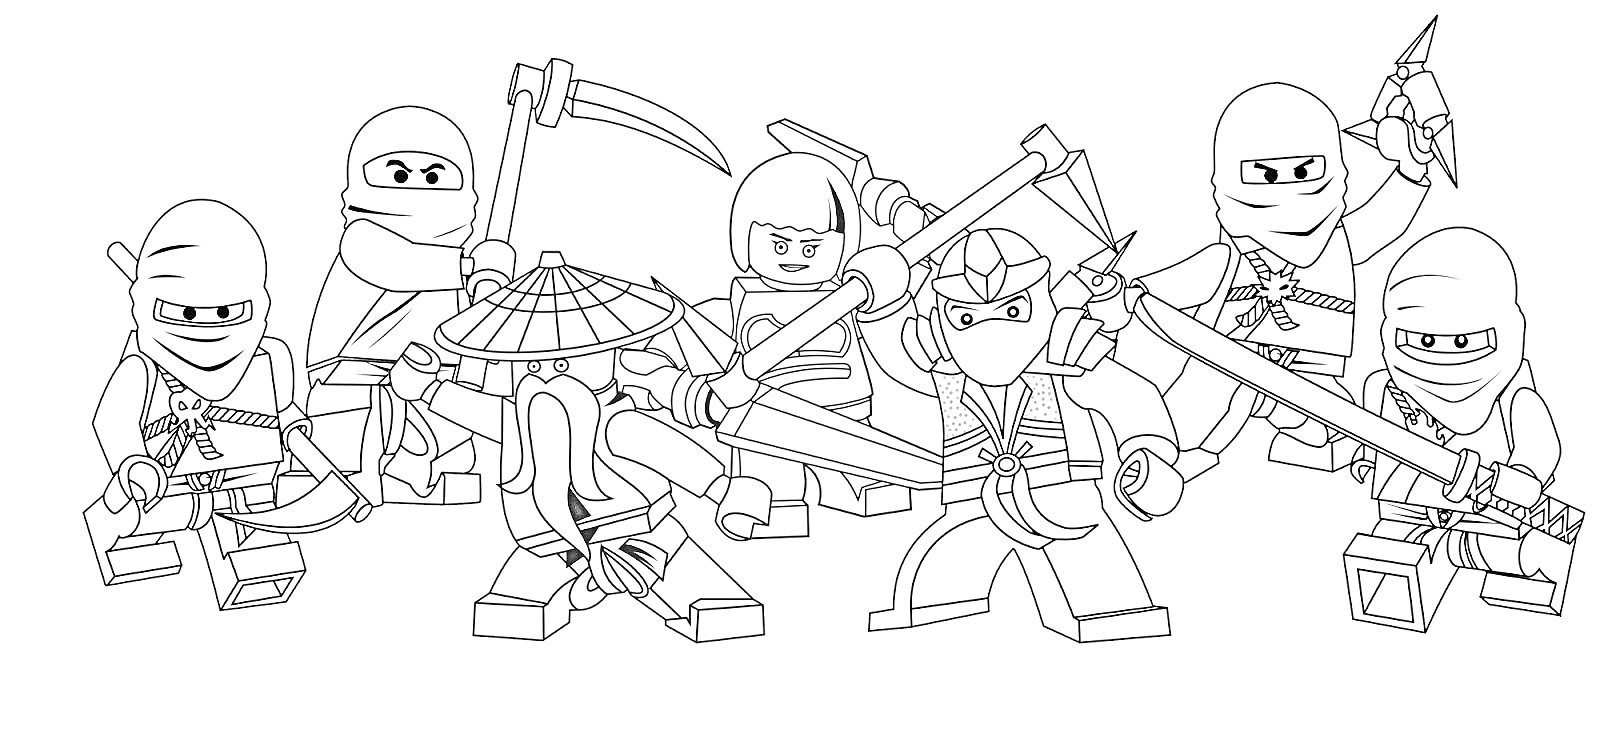 Раскраска Лего Ниндзя Го, группа из шести ниндзя с оружием (мечи, копье, лук)